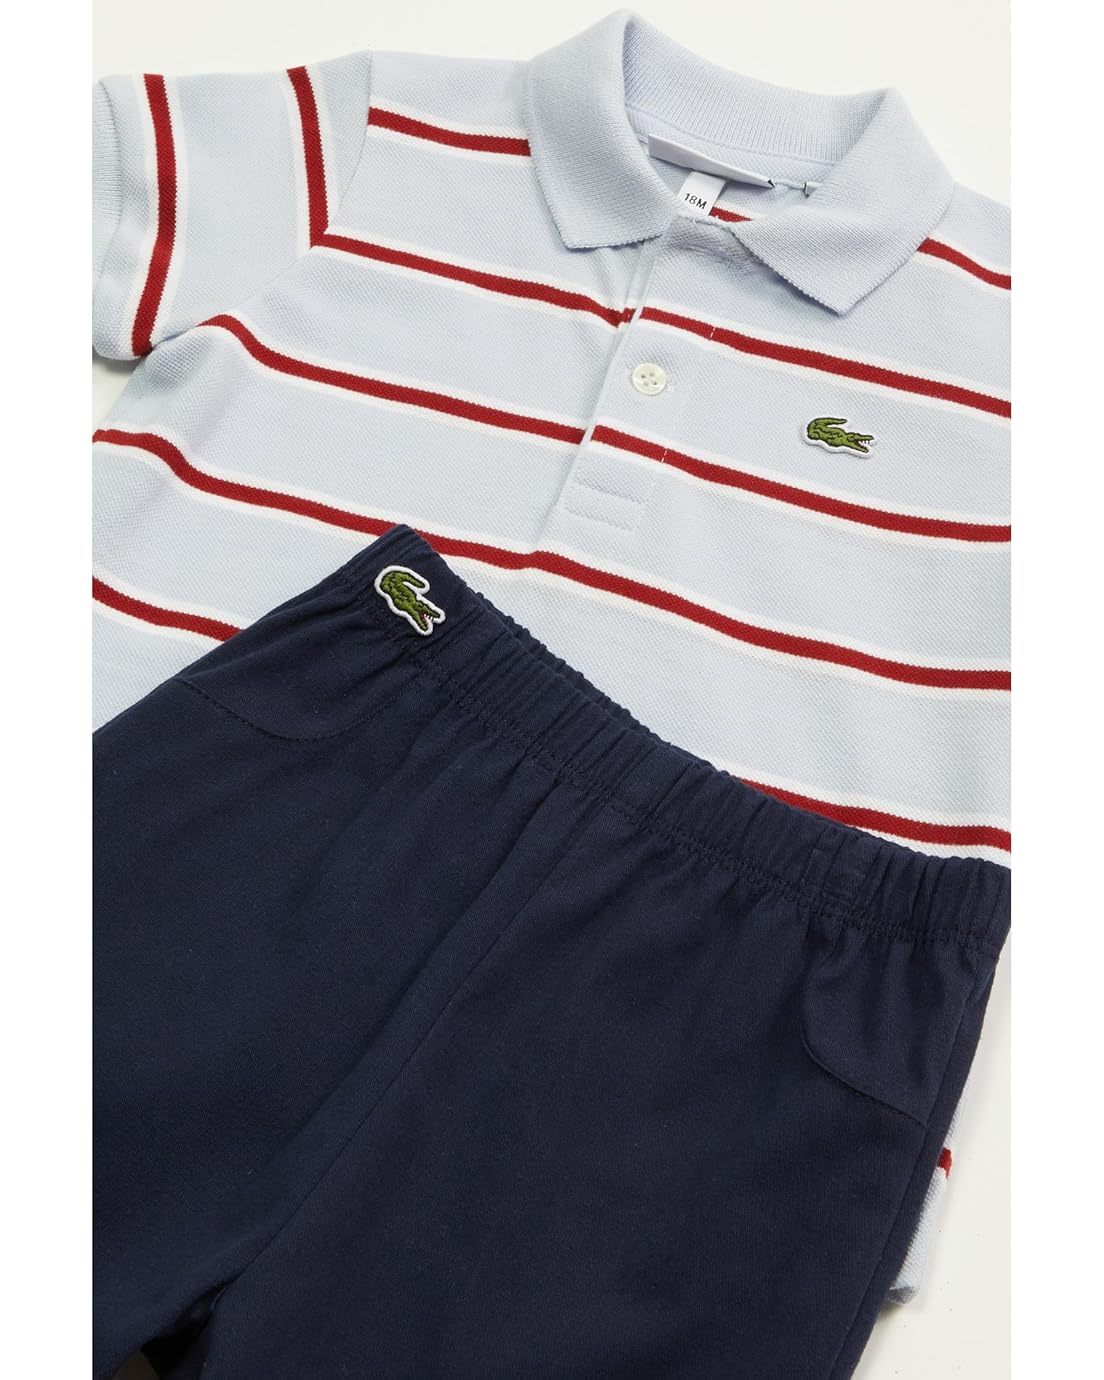 라코스테 Lacoste Kids Short Sleeve Polo with Shorts Giftset (Toddler)